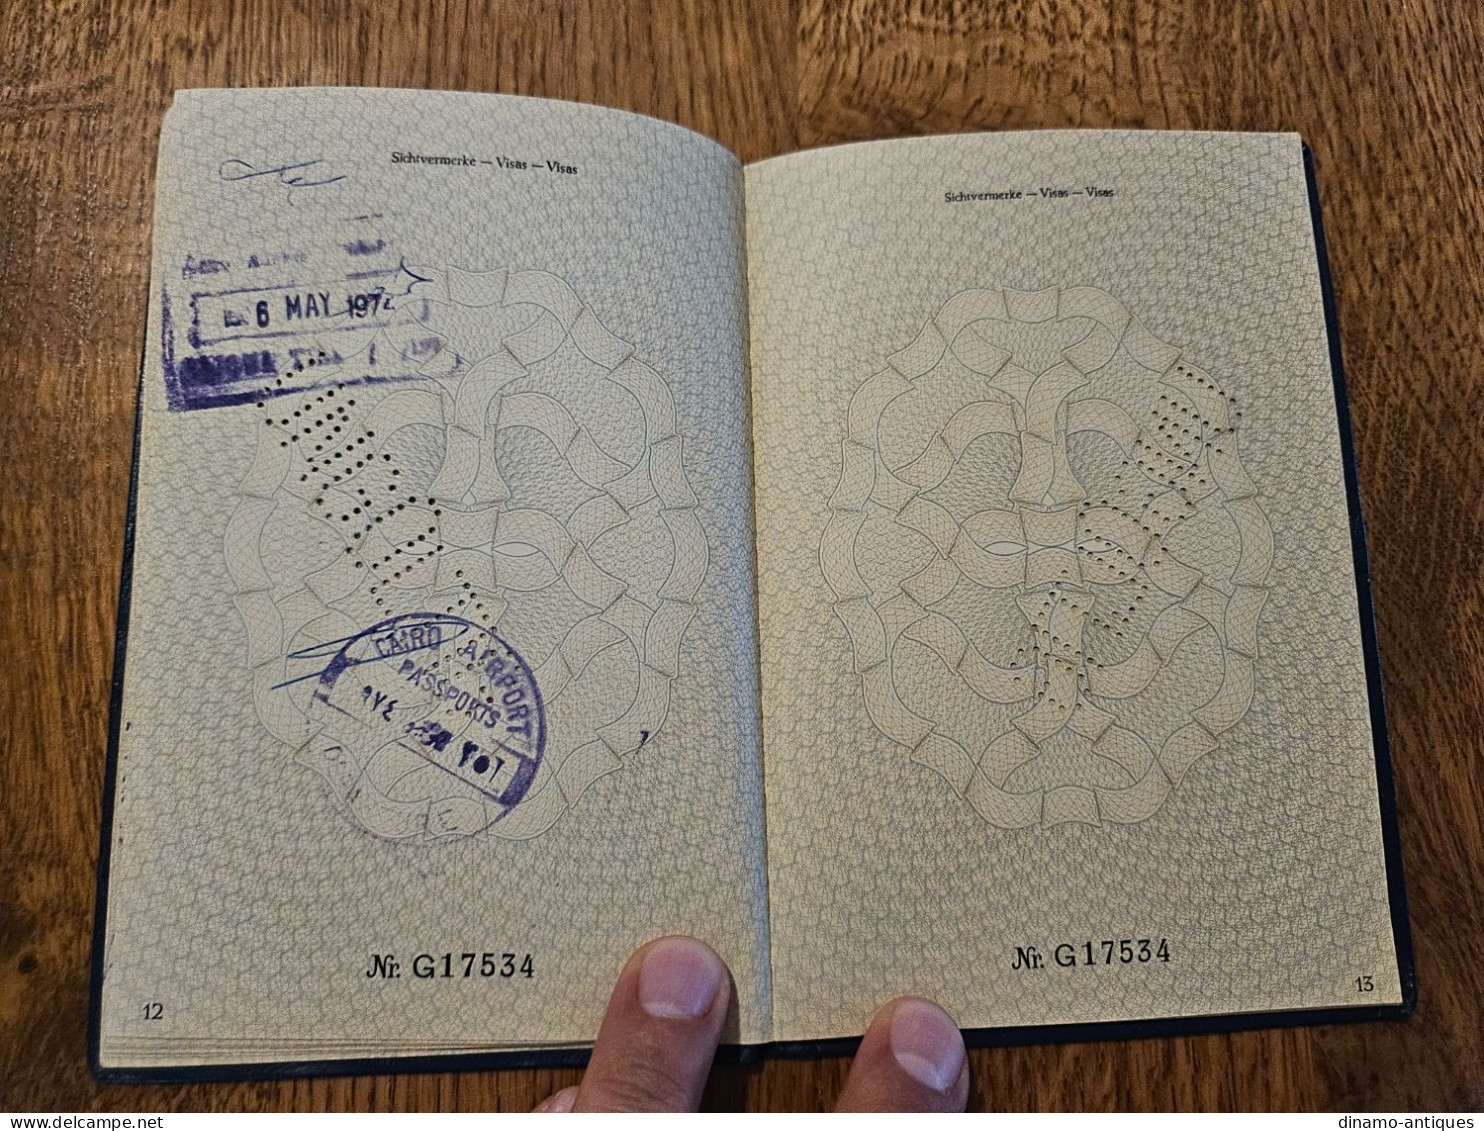 1973 Germany diplomatic passport passeport diplomatique diplomatenpass issued in Bonn - travel to Egypt Lebanon